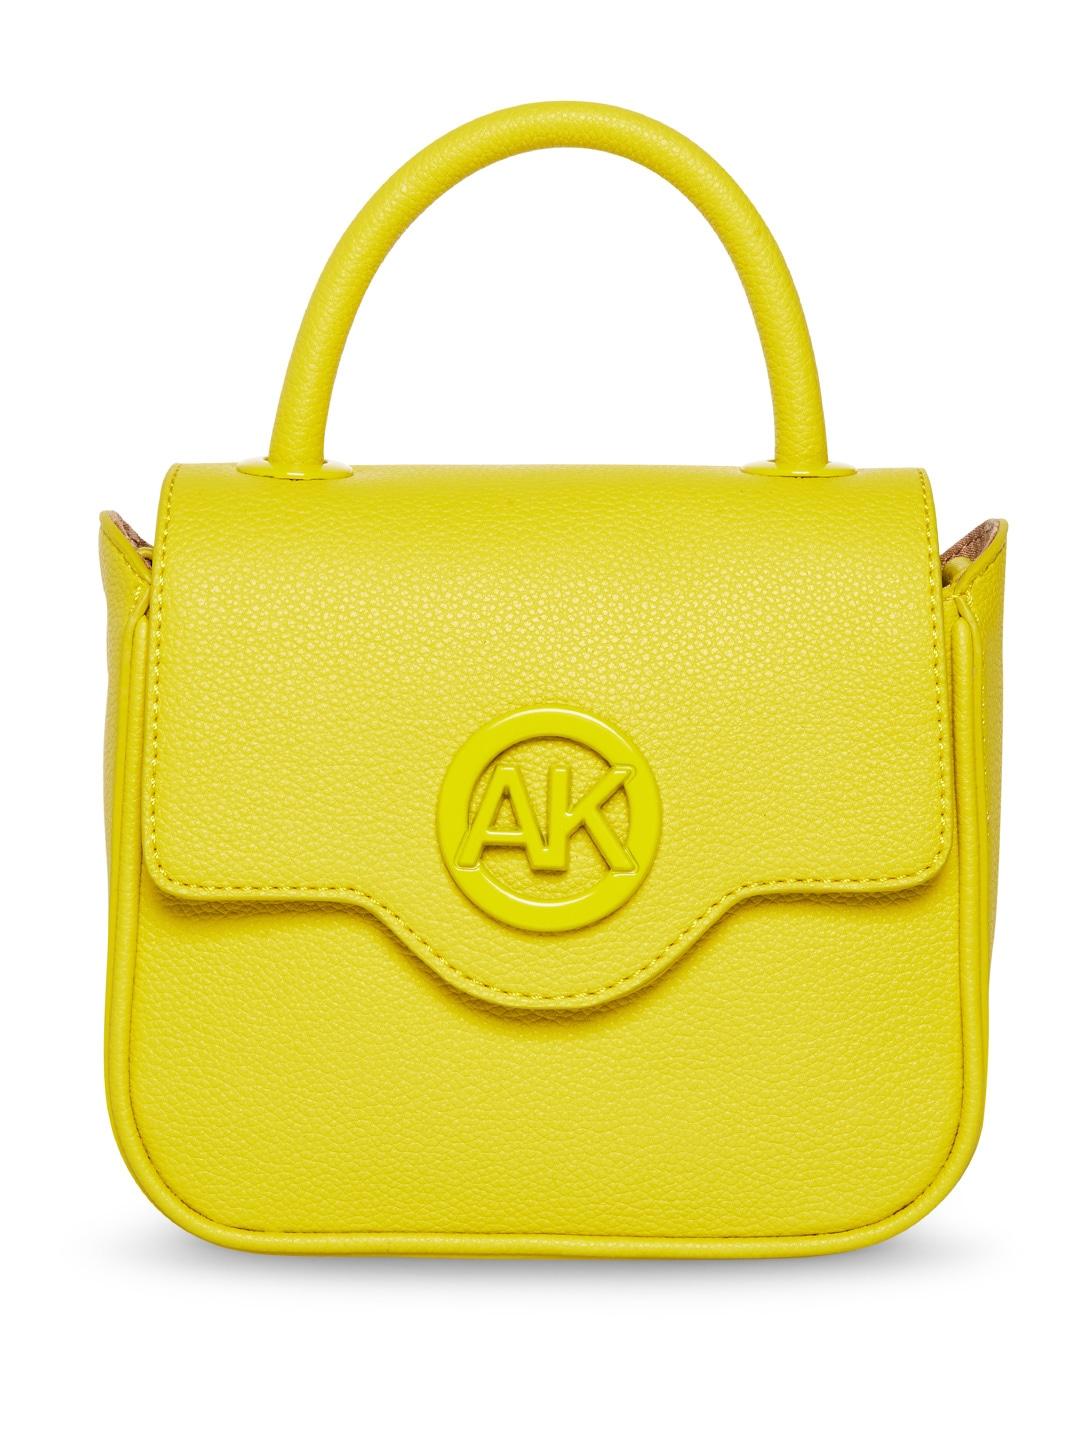 anne klein textured structured satchel bag with brand logo detail